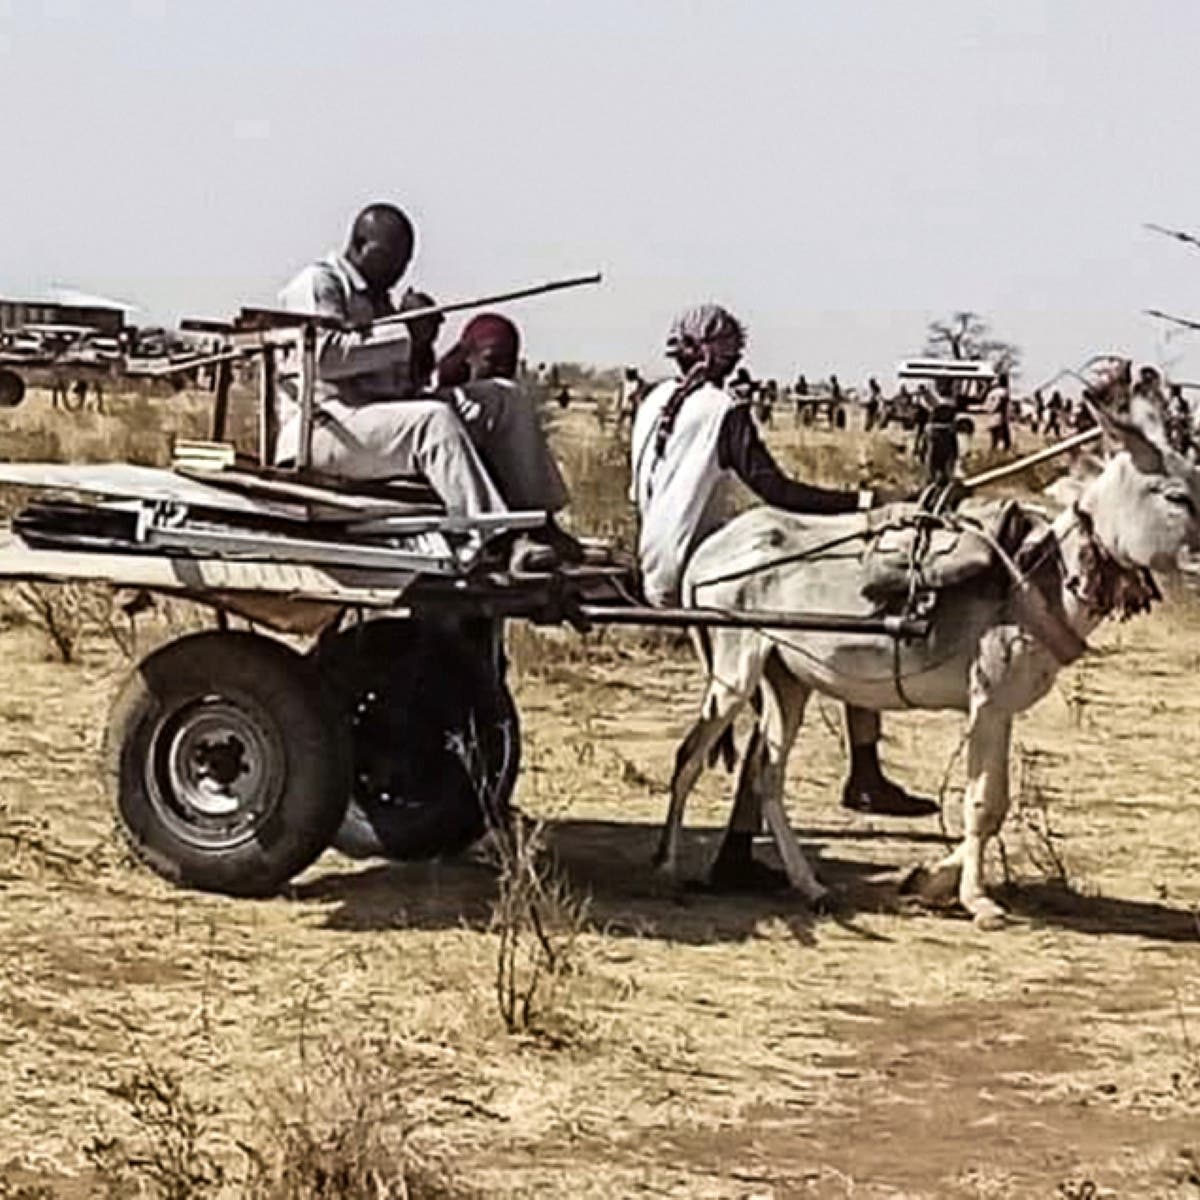 مقتل 27 شخصاً في اشتباكات قبلية في غرب وجنوب السودان